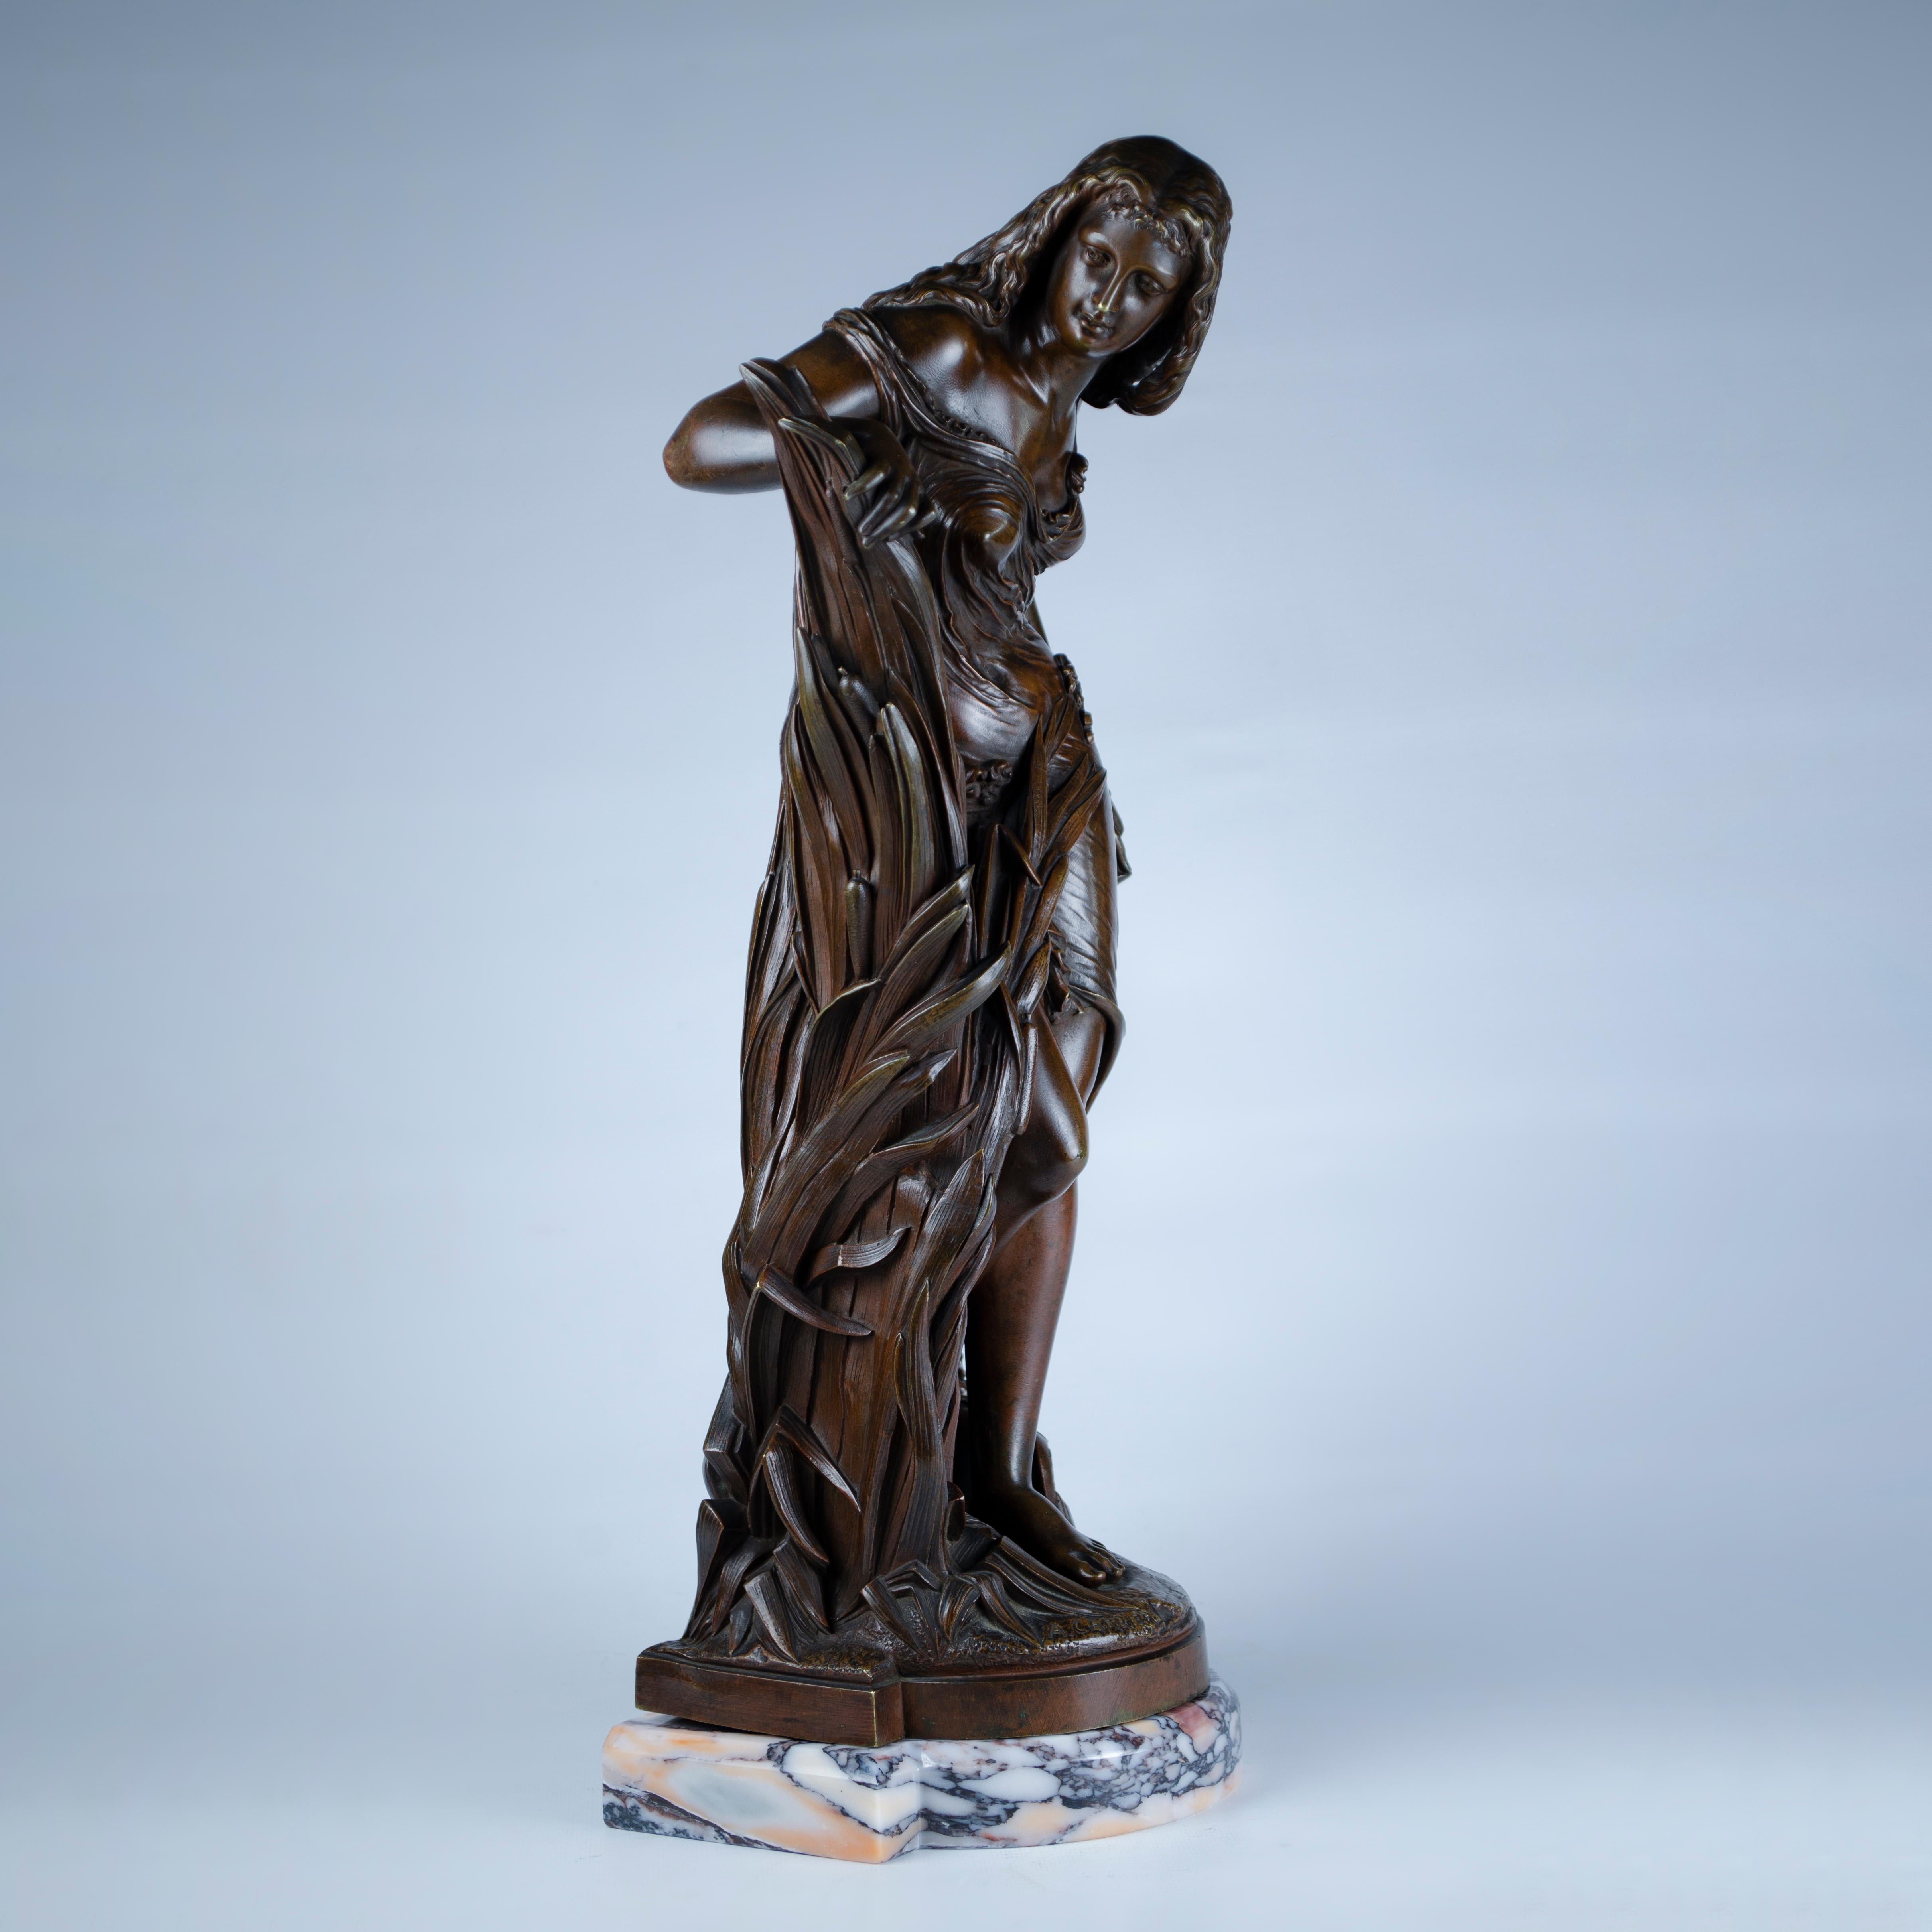 Sculpture en bronze coulé très finement ciselé représentant une belle nymphe nue émergeant de grands roseaux au bord d'un ruisseau. À ses pieds se trouve une cruche à eau, avec une base en marbre. Réalisé par Albert-Ernest Carrier-Belleuse,